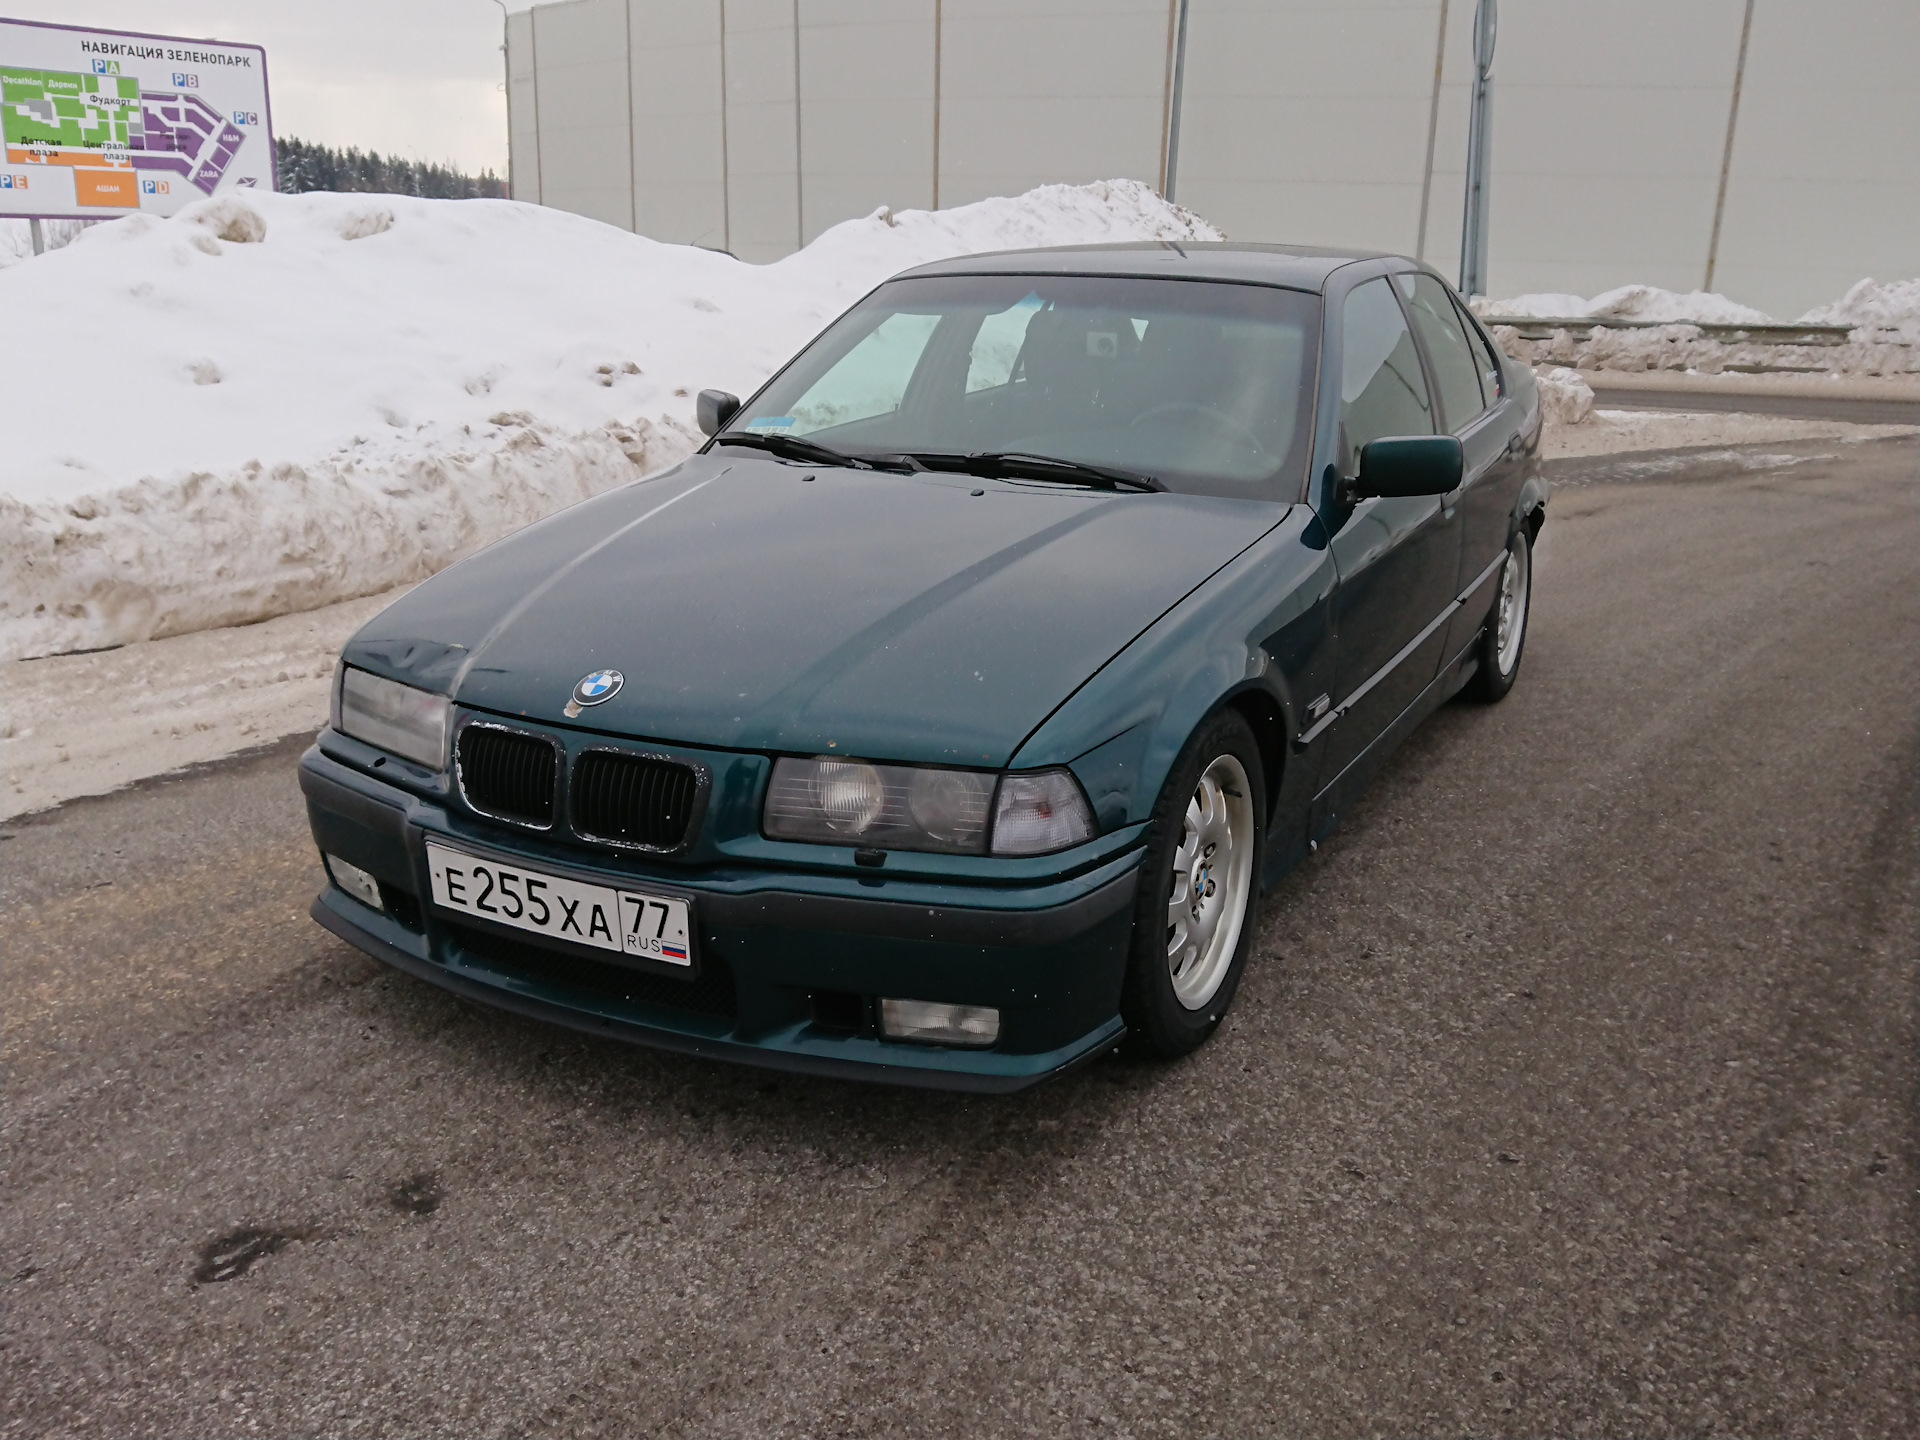   36  BMW 3 series E36 2  1993       DRIVE2